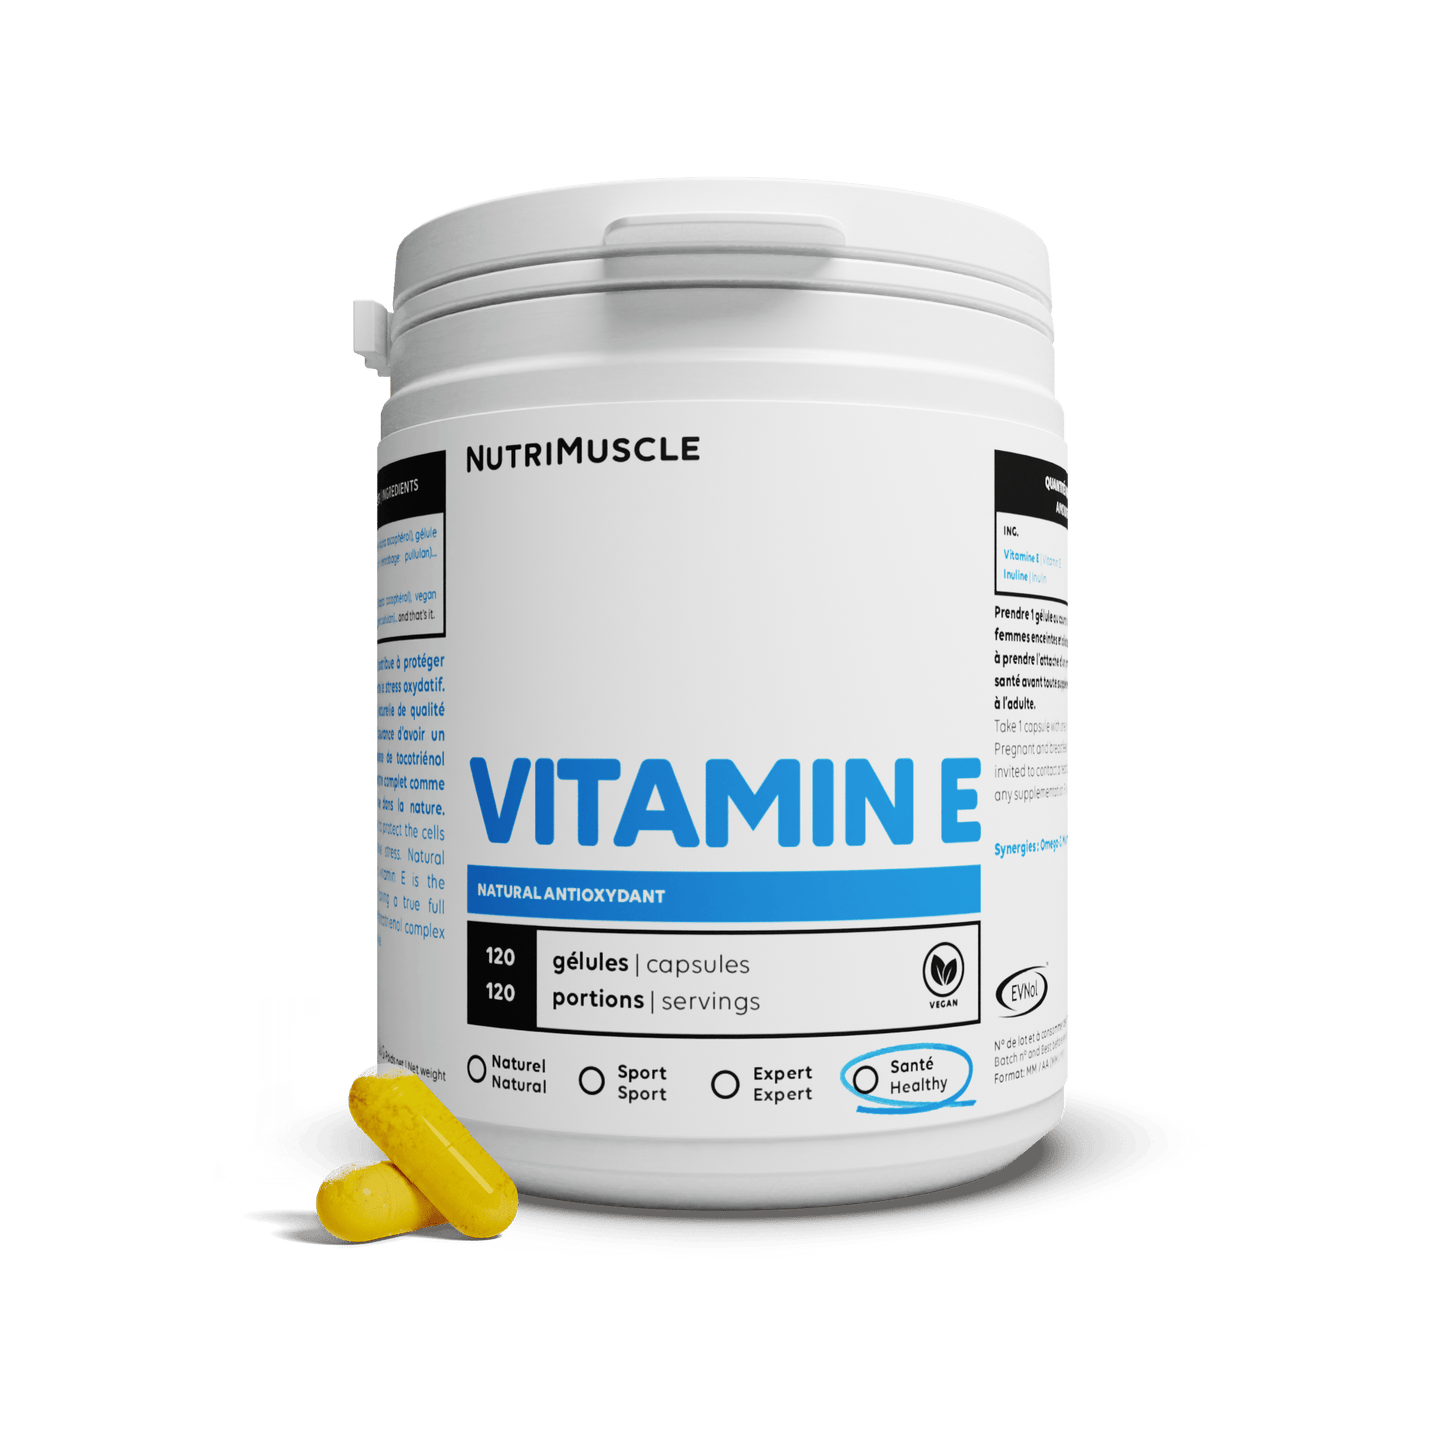 Nutrimuscle Vitamines 120 gélules Vitamine E naturelle